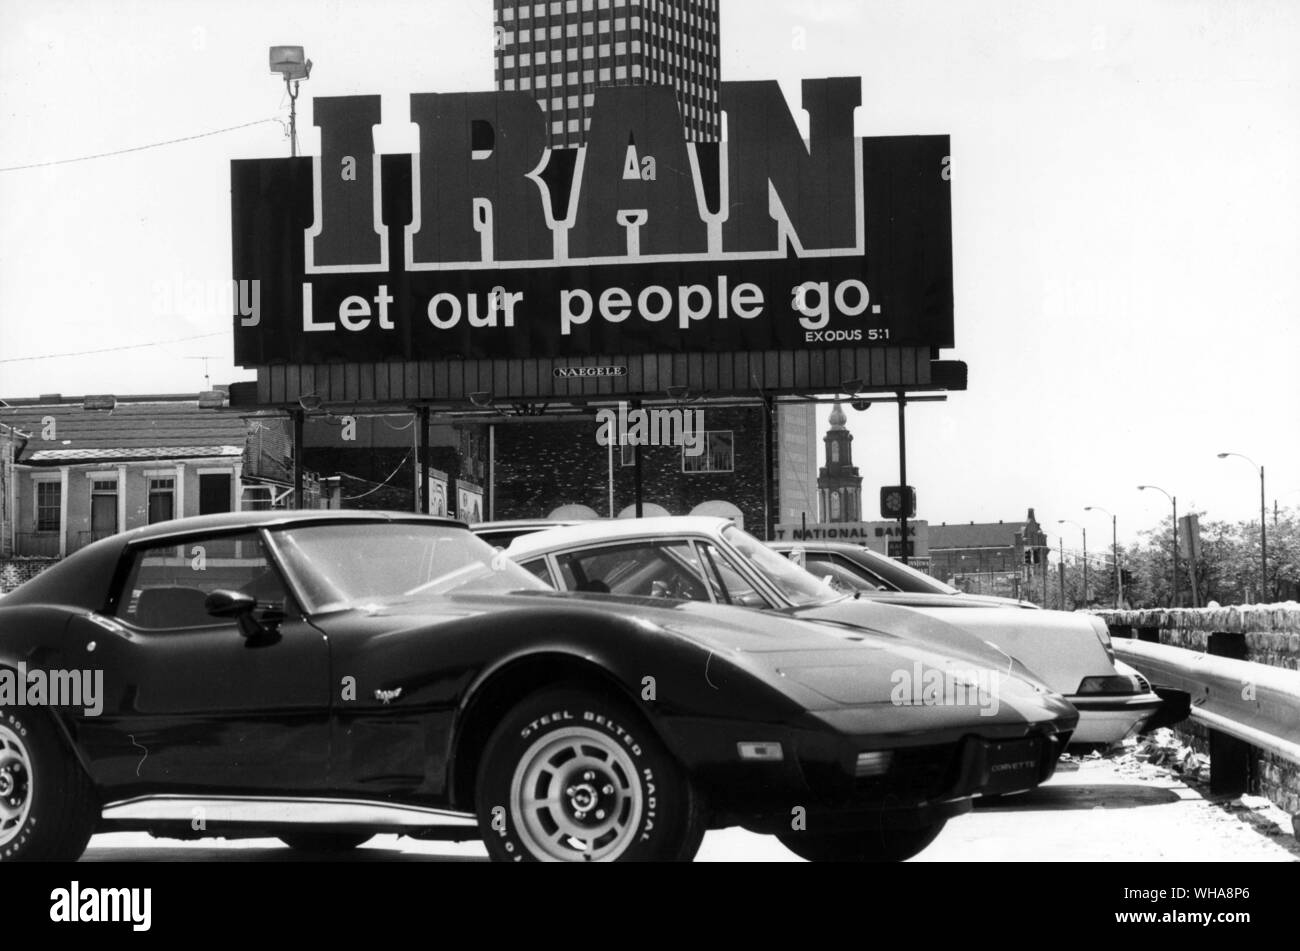 Iran lassen Sie sich von unserem Volk. Exodus 5:1. Corvette Stockfoto